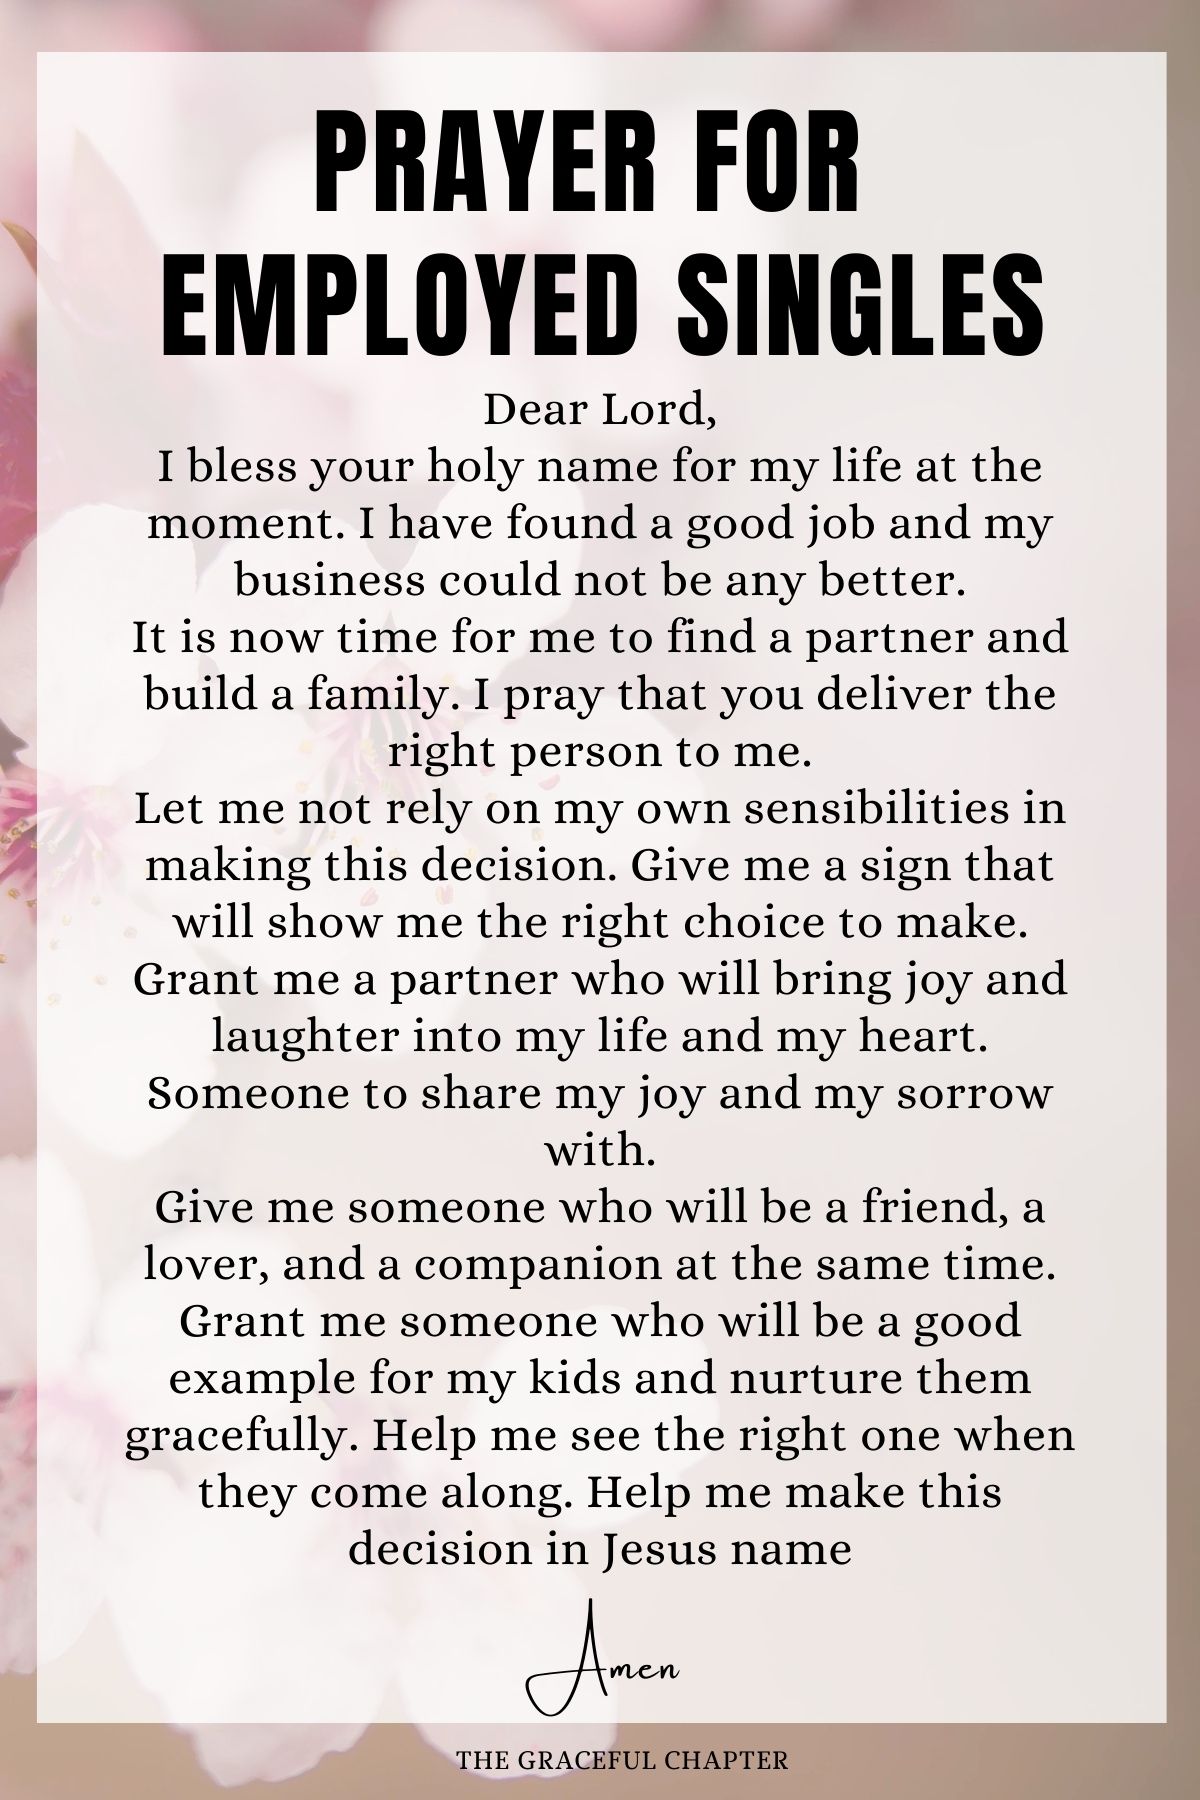 Prayer for Employed Singles